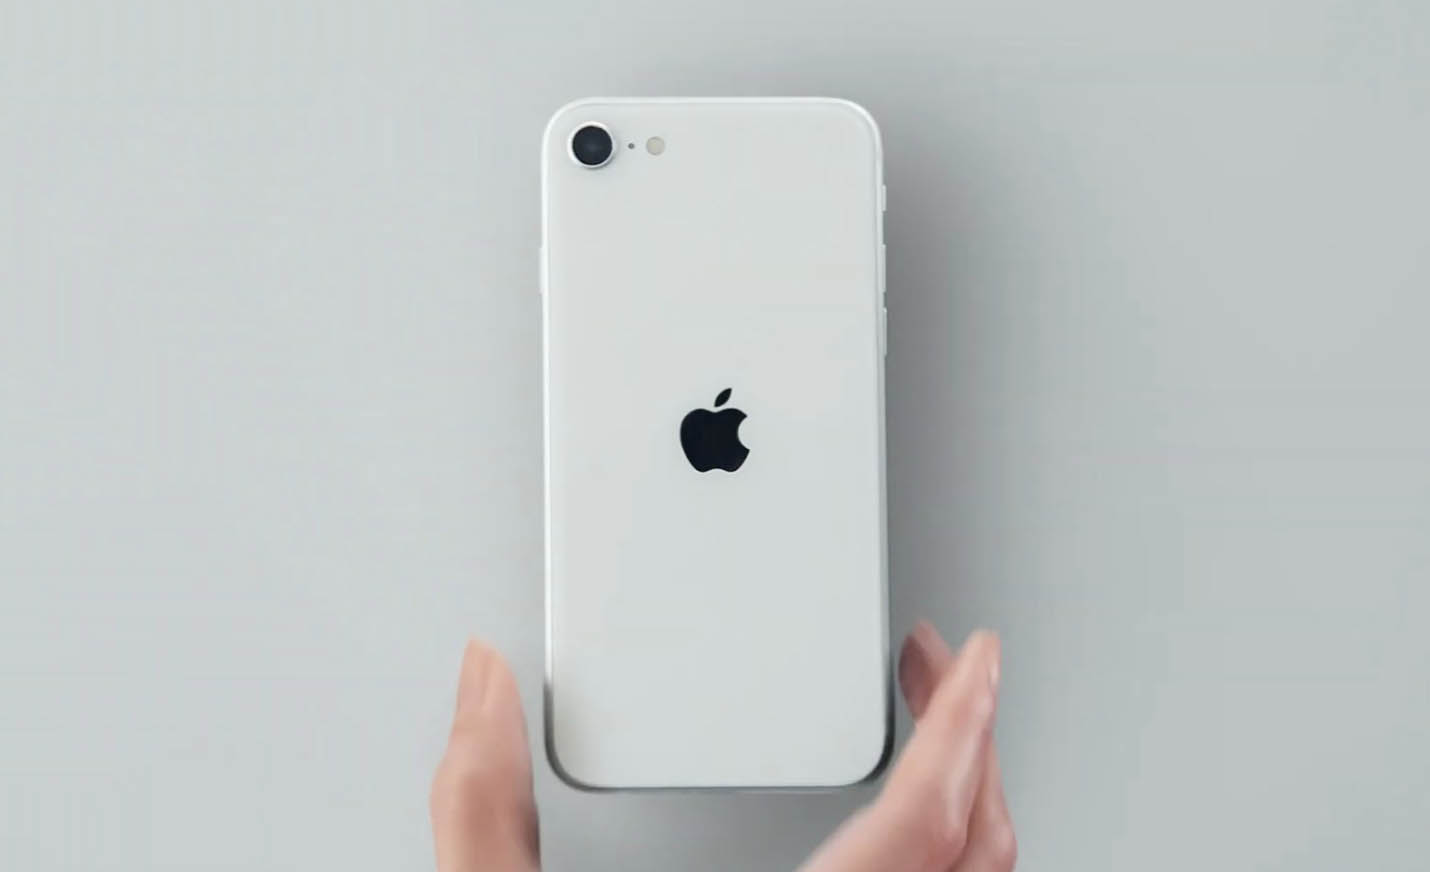 Apple cho biết việc bán iPhone mới không kèm củ sạc giúp tiết kiệm 861,000 tấn kim loại